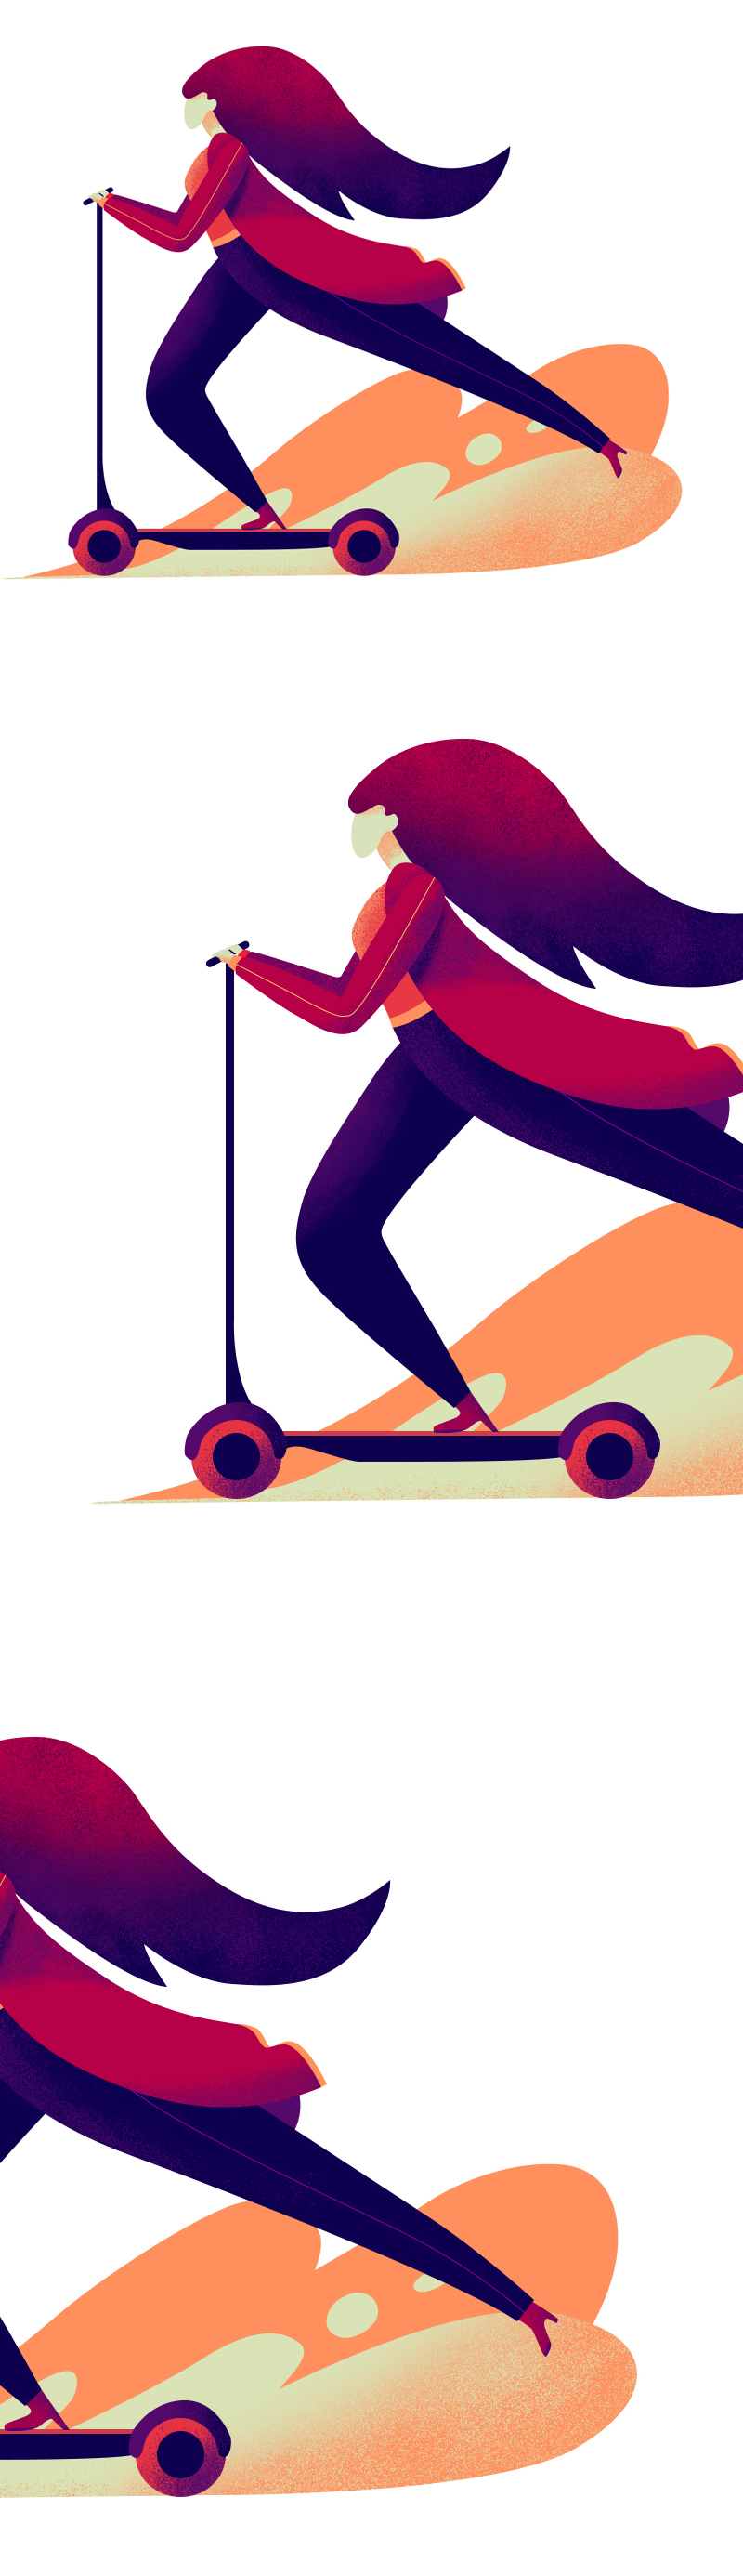 噪点插画：用PS给滑板车人像添加噪点,PS教程,素材中国网